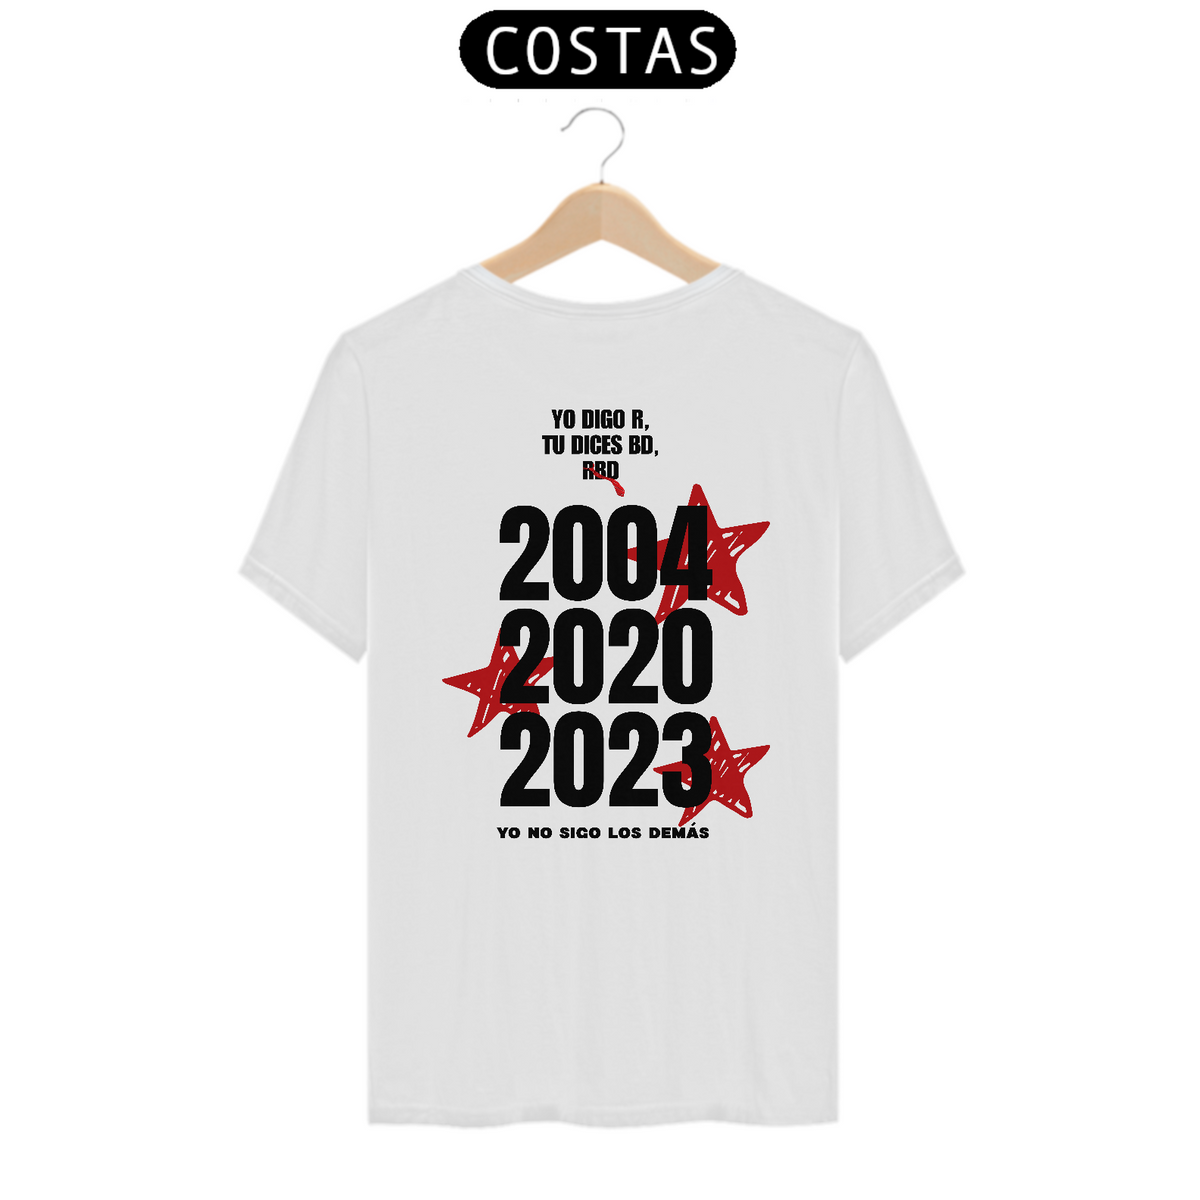 Nome do produto: Camiseta Unissex Personalizada - RBD